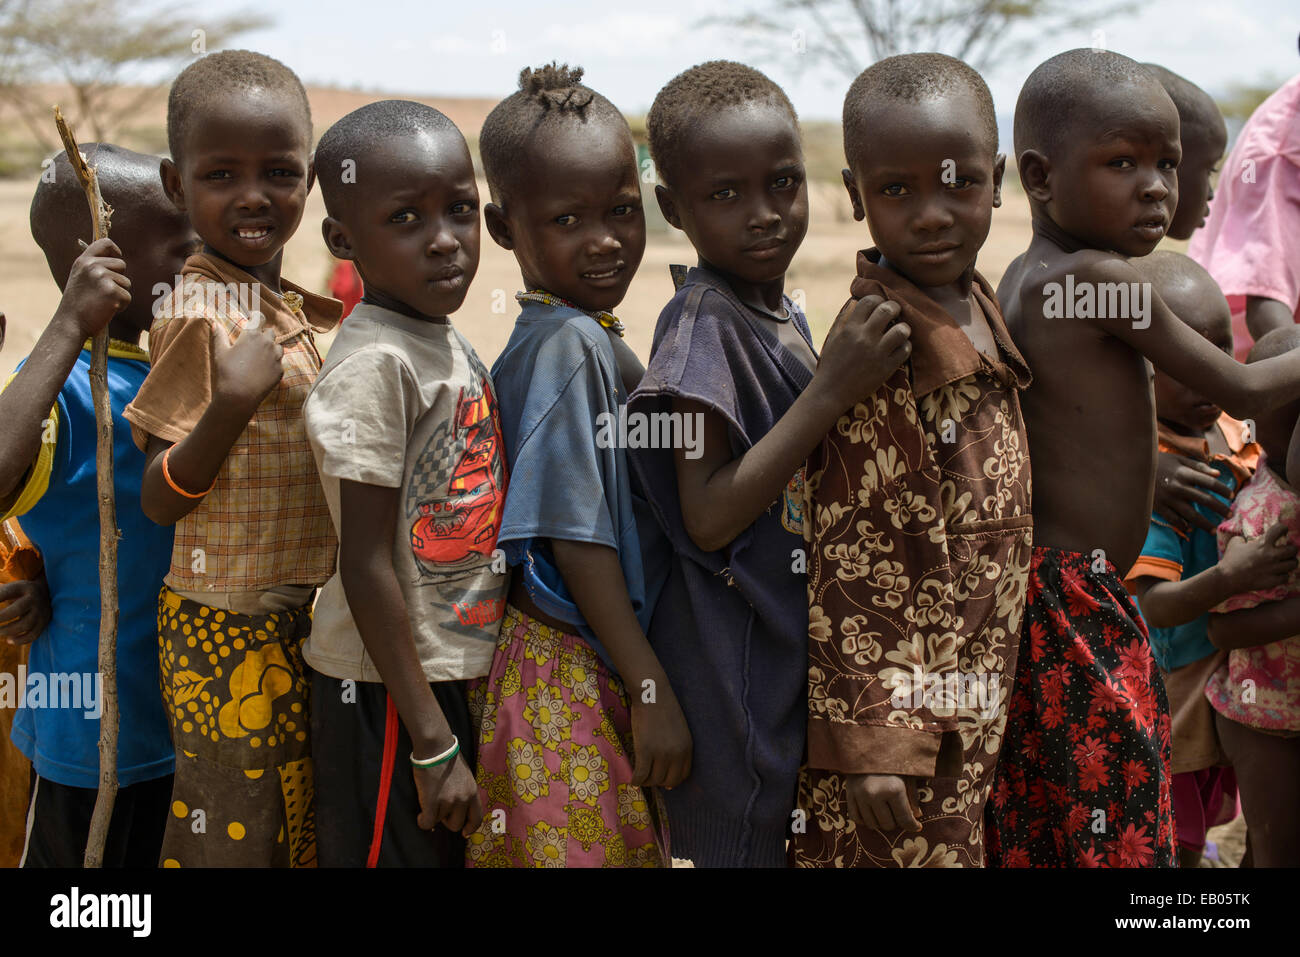 Turkana children queueing for candies in a village, Kenya Stock Photo